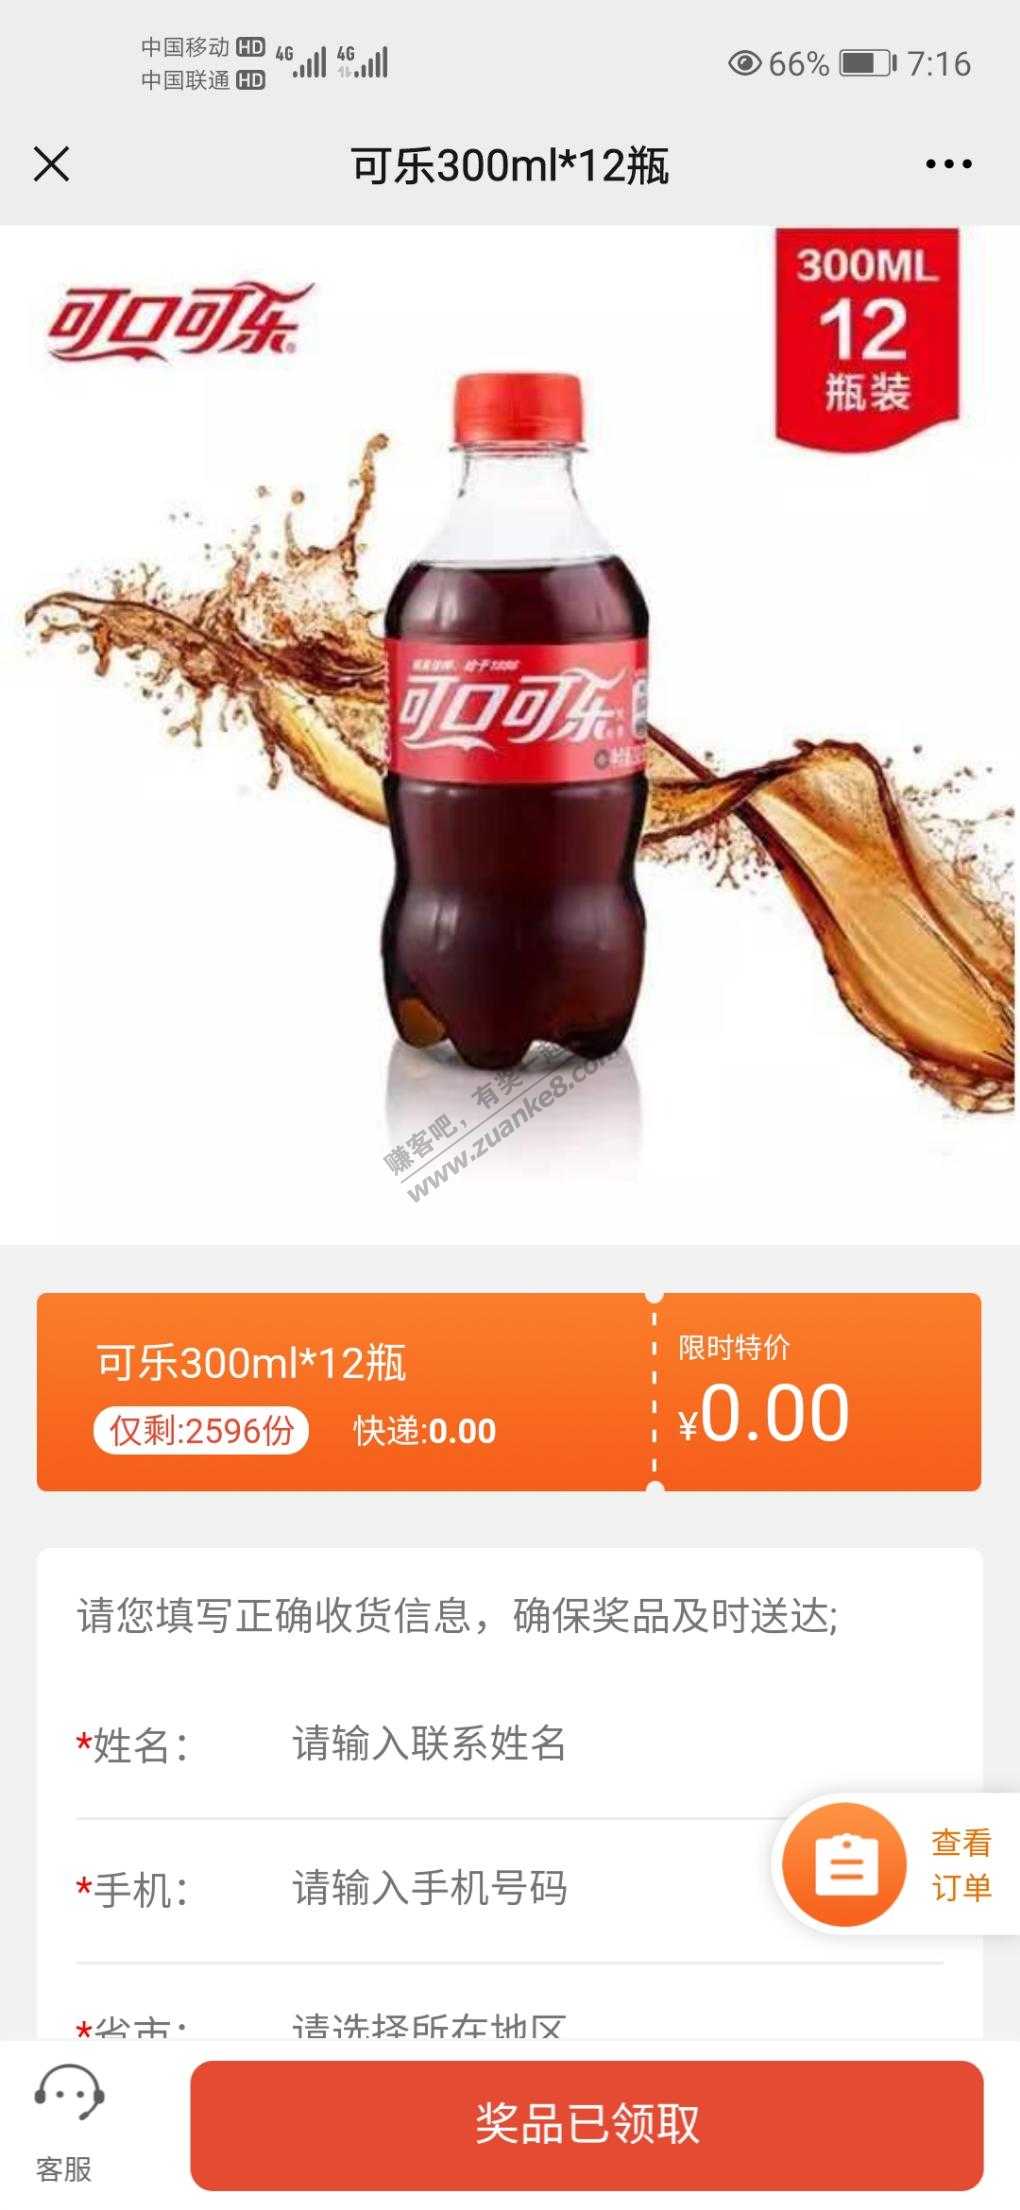 交个朋友公众号-推送第一个-可乐还有两千多份-惠小助(52huixz.com)